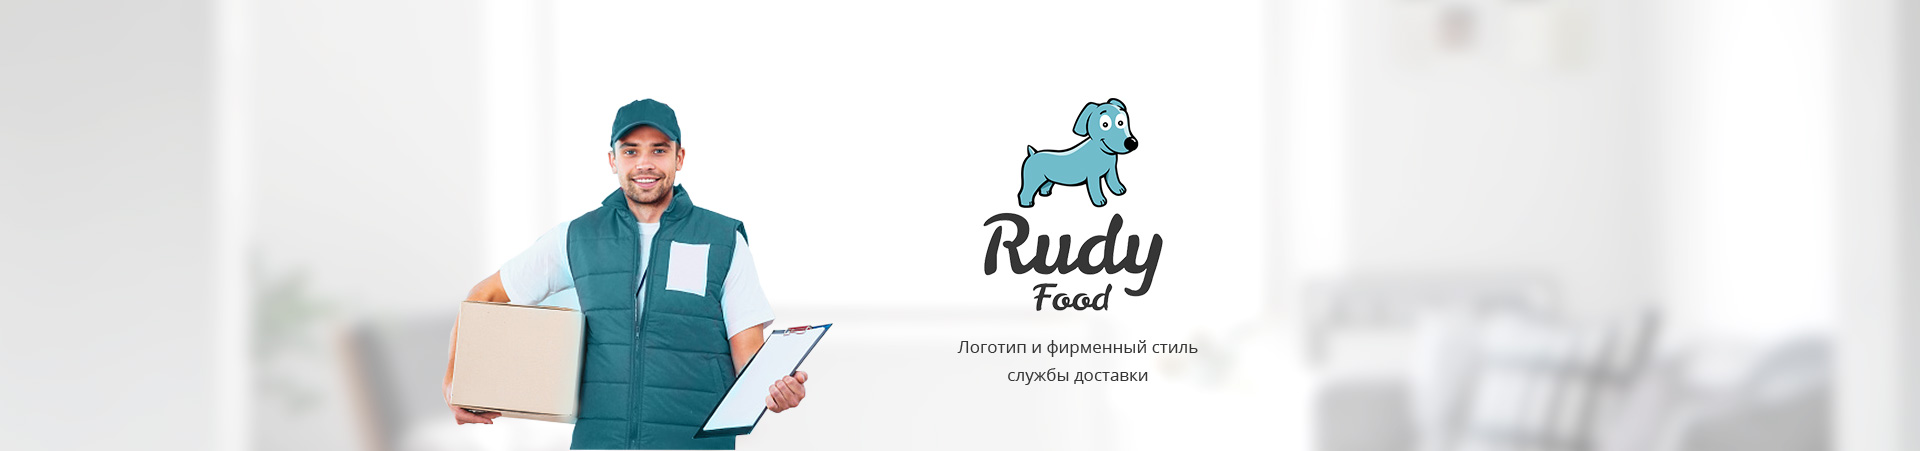 Доставка продуктов RudyFood